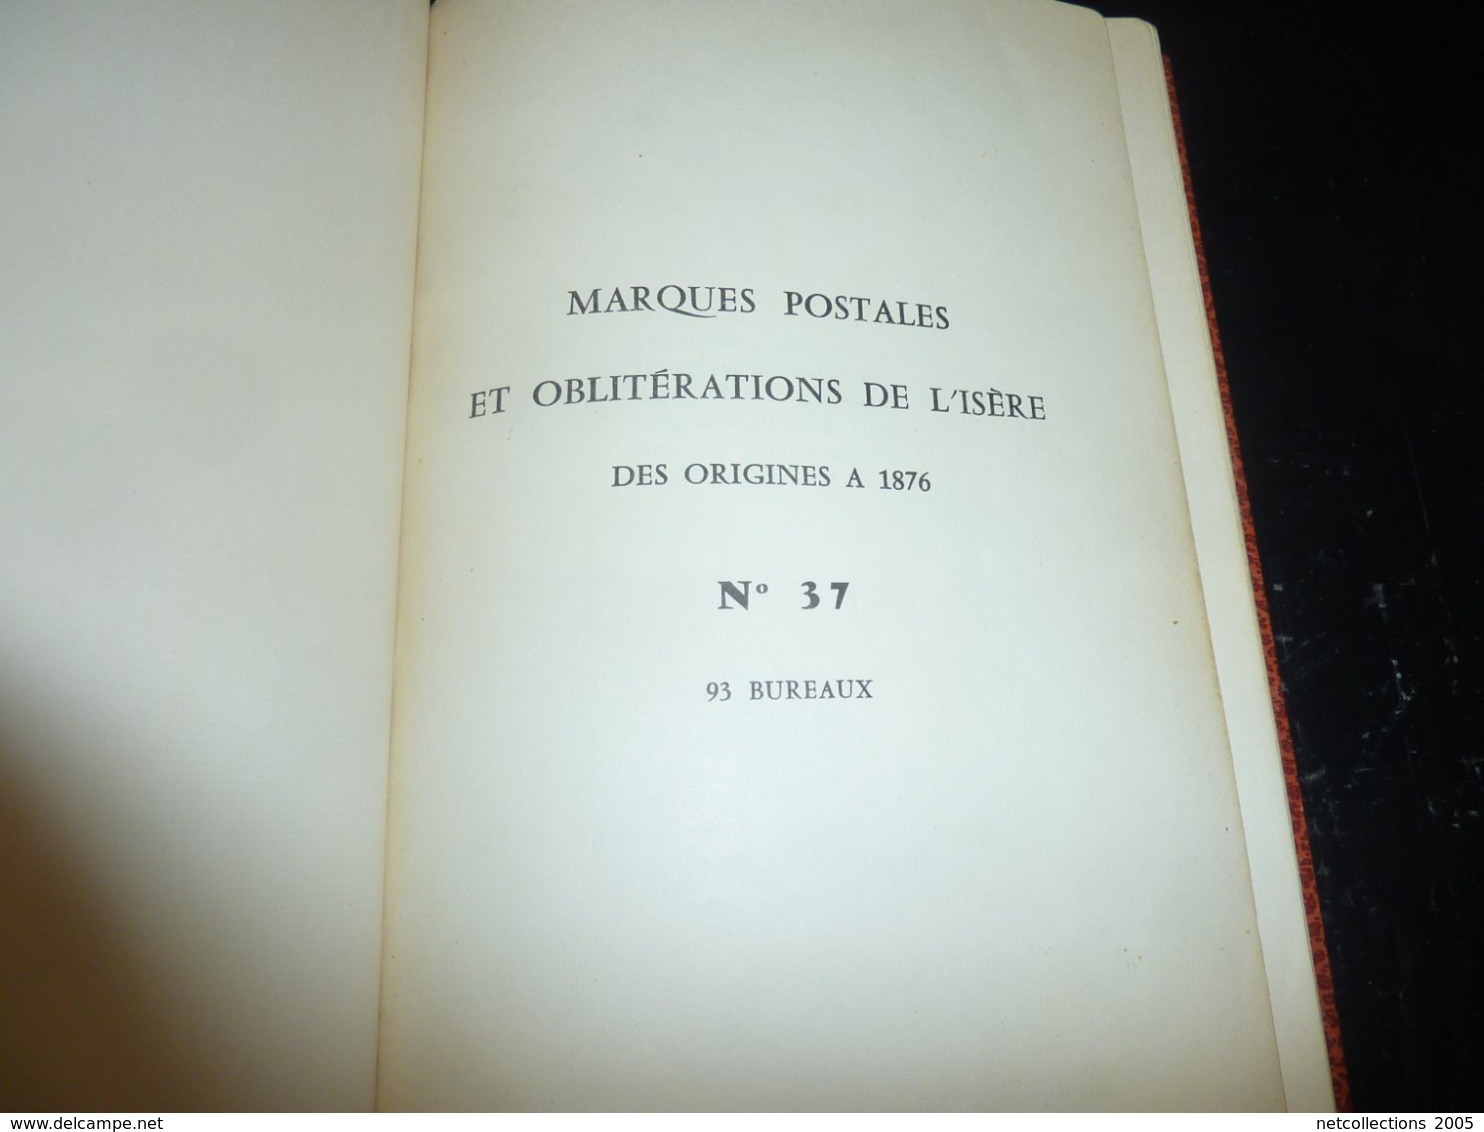 MARQUES POSTALES ET OBLITERATIONS DE L'ISERE DES ORIGINES A 1876 N°37 - " 93 Bureaux "  - PHILATELIE STAMPS BOOK (C.B) - Annullamenti